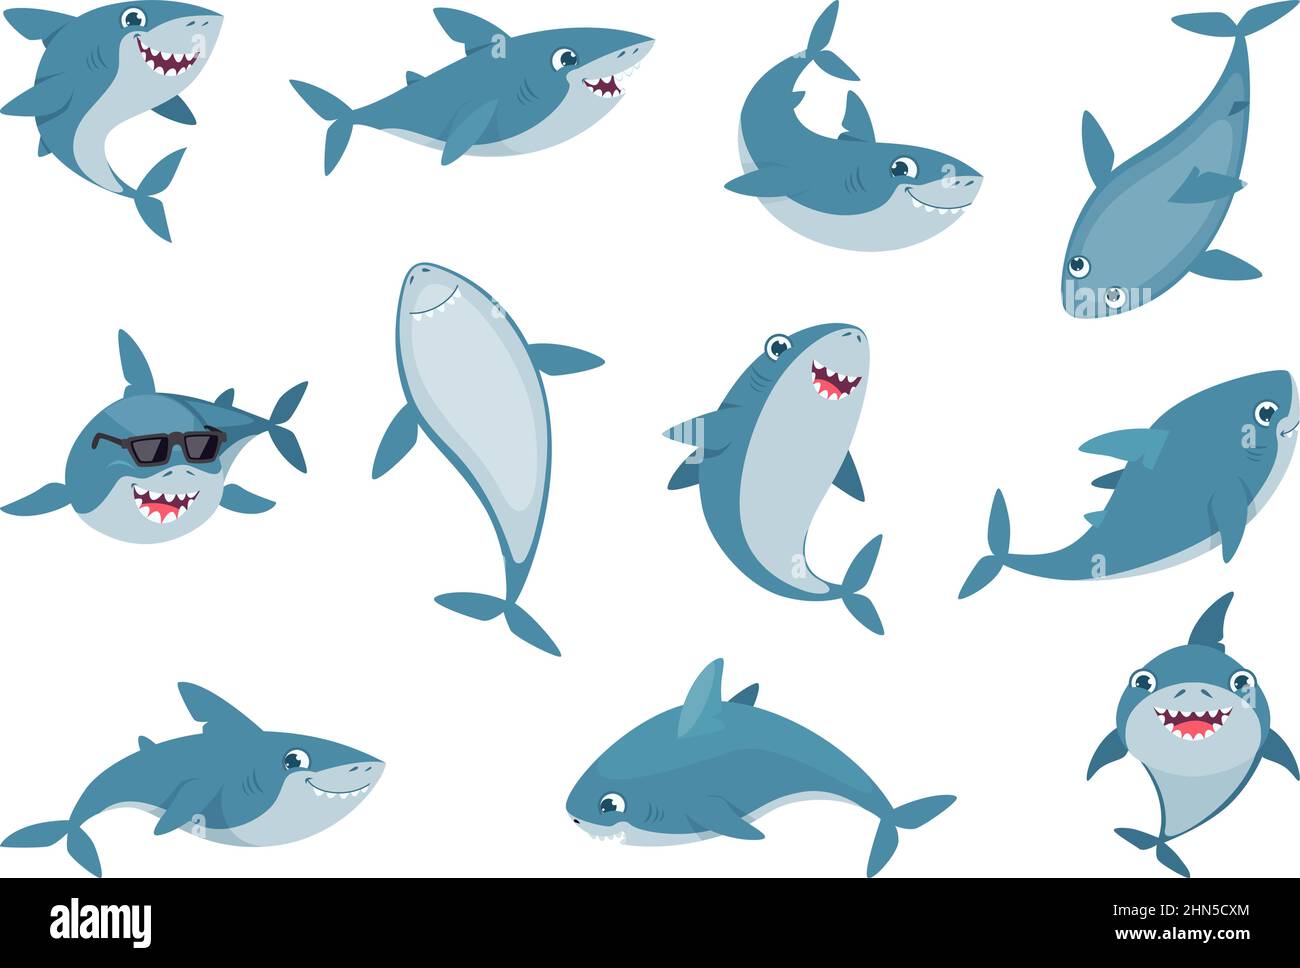 Ozeanhai. Niedliche wild schwimmende lächelnde Haie mit großen weißen Zähnen exaktes Vektor-Cartoon-Illustrationen-Set Stock Vektor